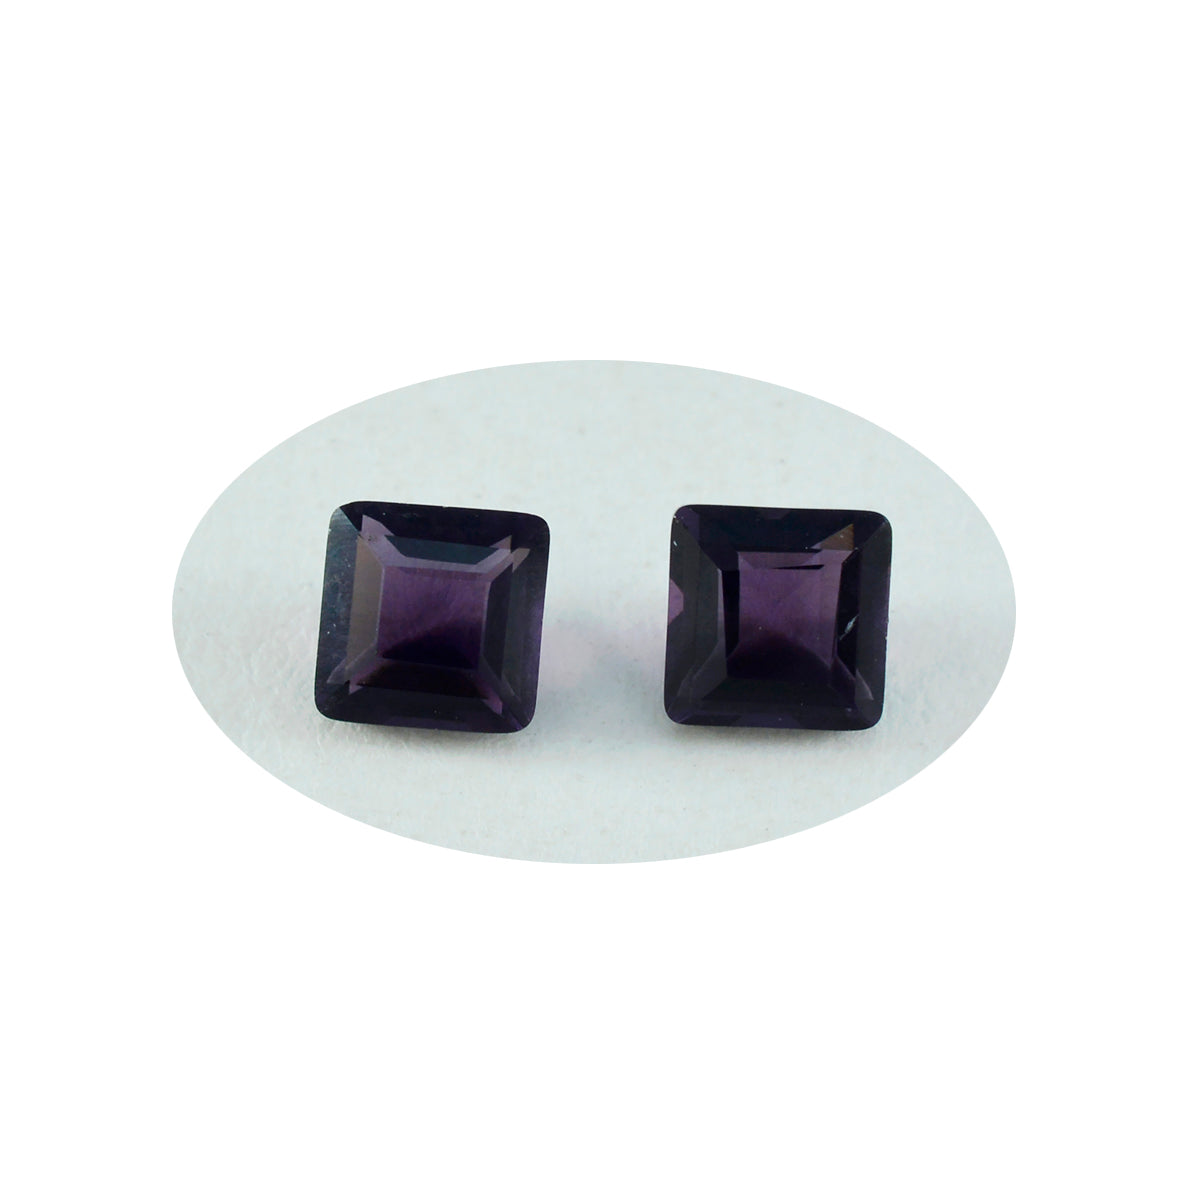 riyogems 1 шт. фиолетовый аметист cz граненый 11x11 мм квадратной формы милый качественный свободный камень